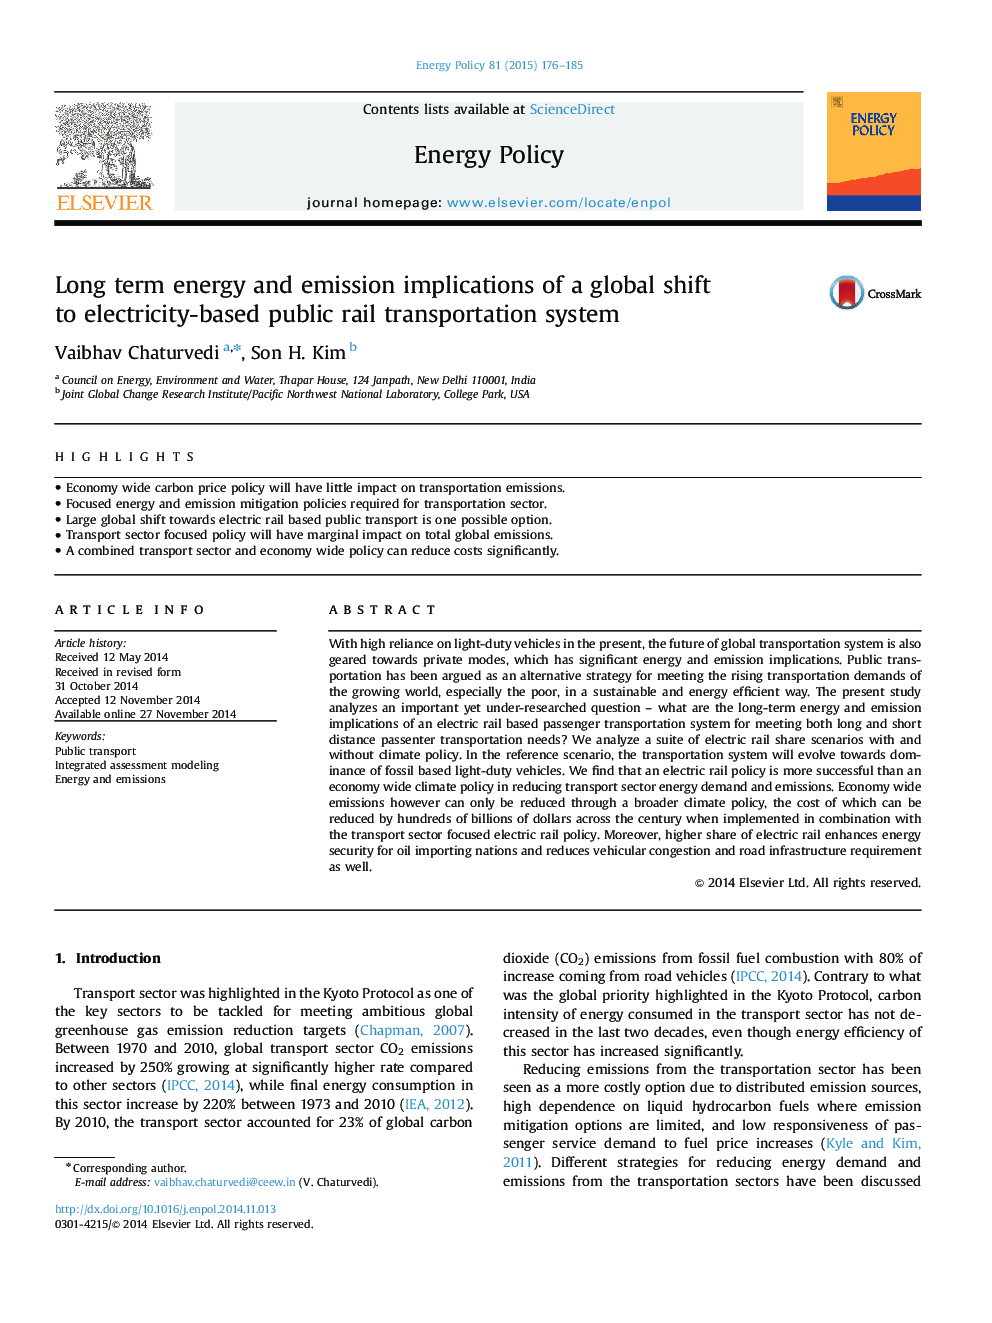 انرژی بلند مدت و انتشار مفاهیم از یک تغییر جهانی به سیستم حمل و نقل ریلی عمومی مبتنی بر برق